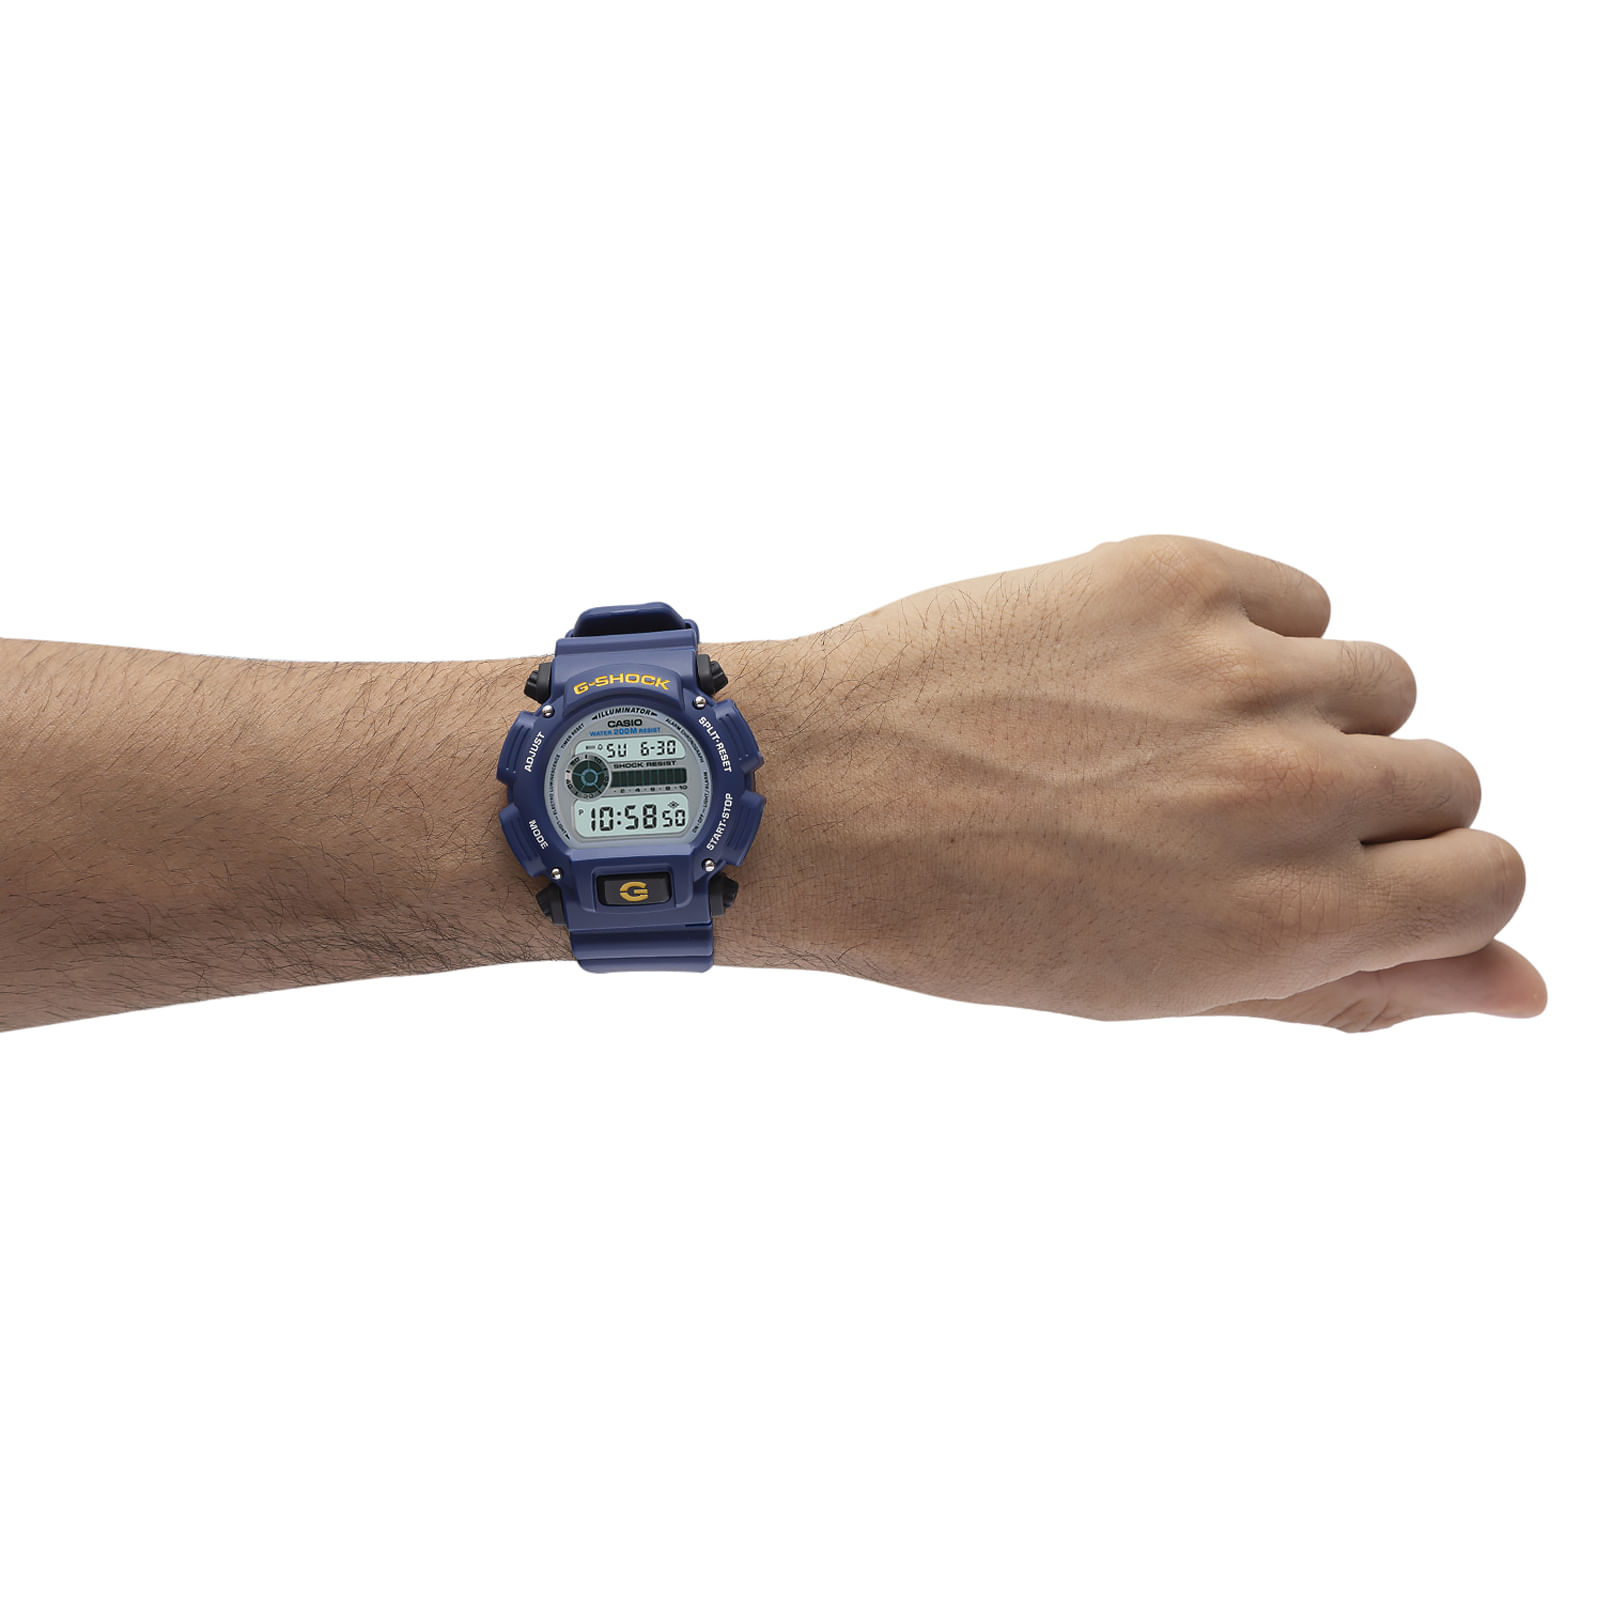 Reloj G-SHOCK DW-9052-2V Resina Hombre Azul